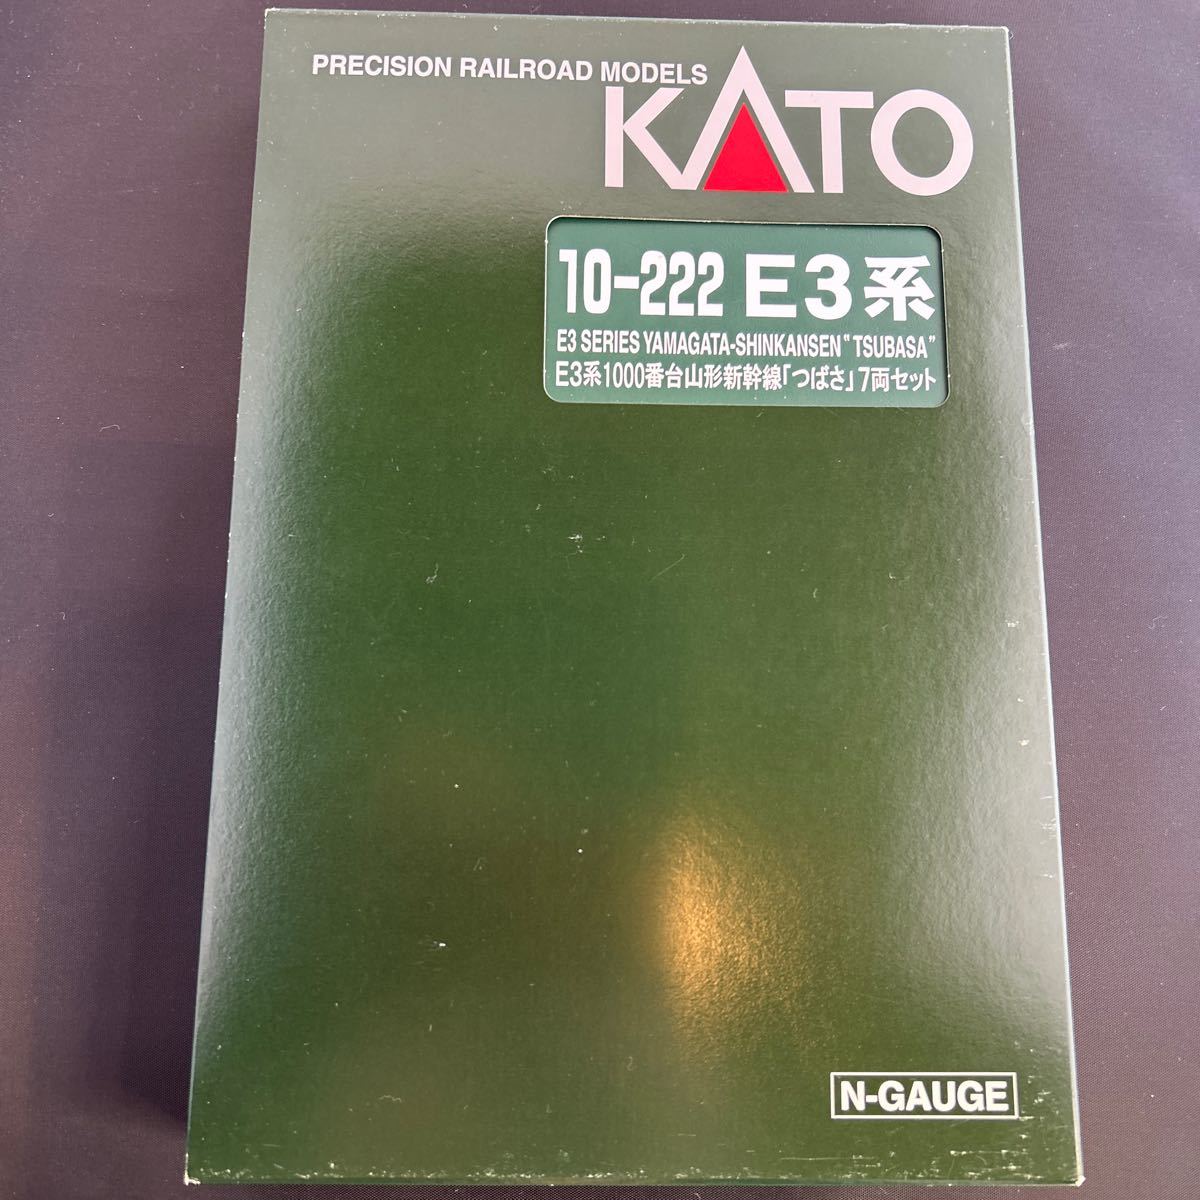 KATO Nゲージ 山形新幹線 つばさ 10-222 E3系　1000番台 動作確認済(走行・前後ライト点灯)